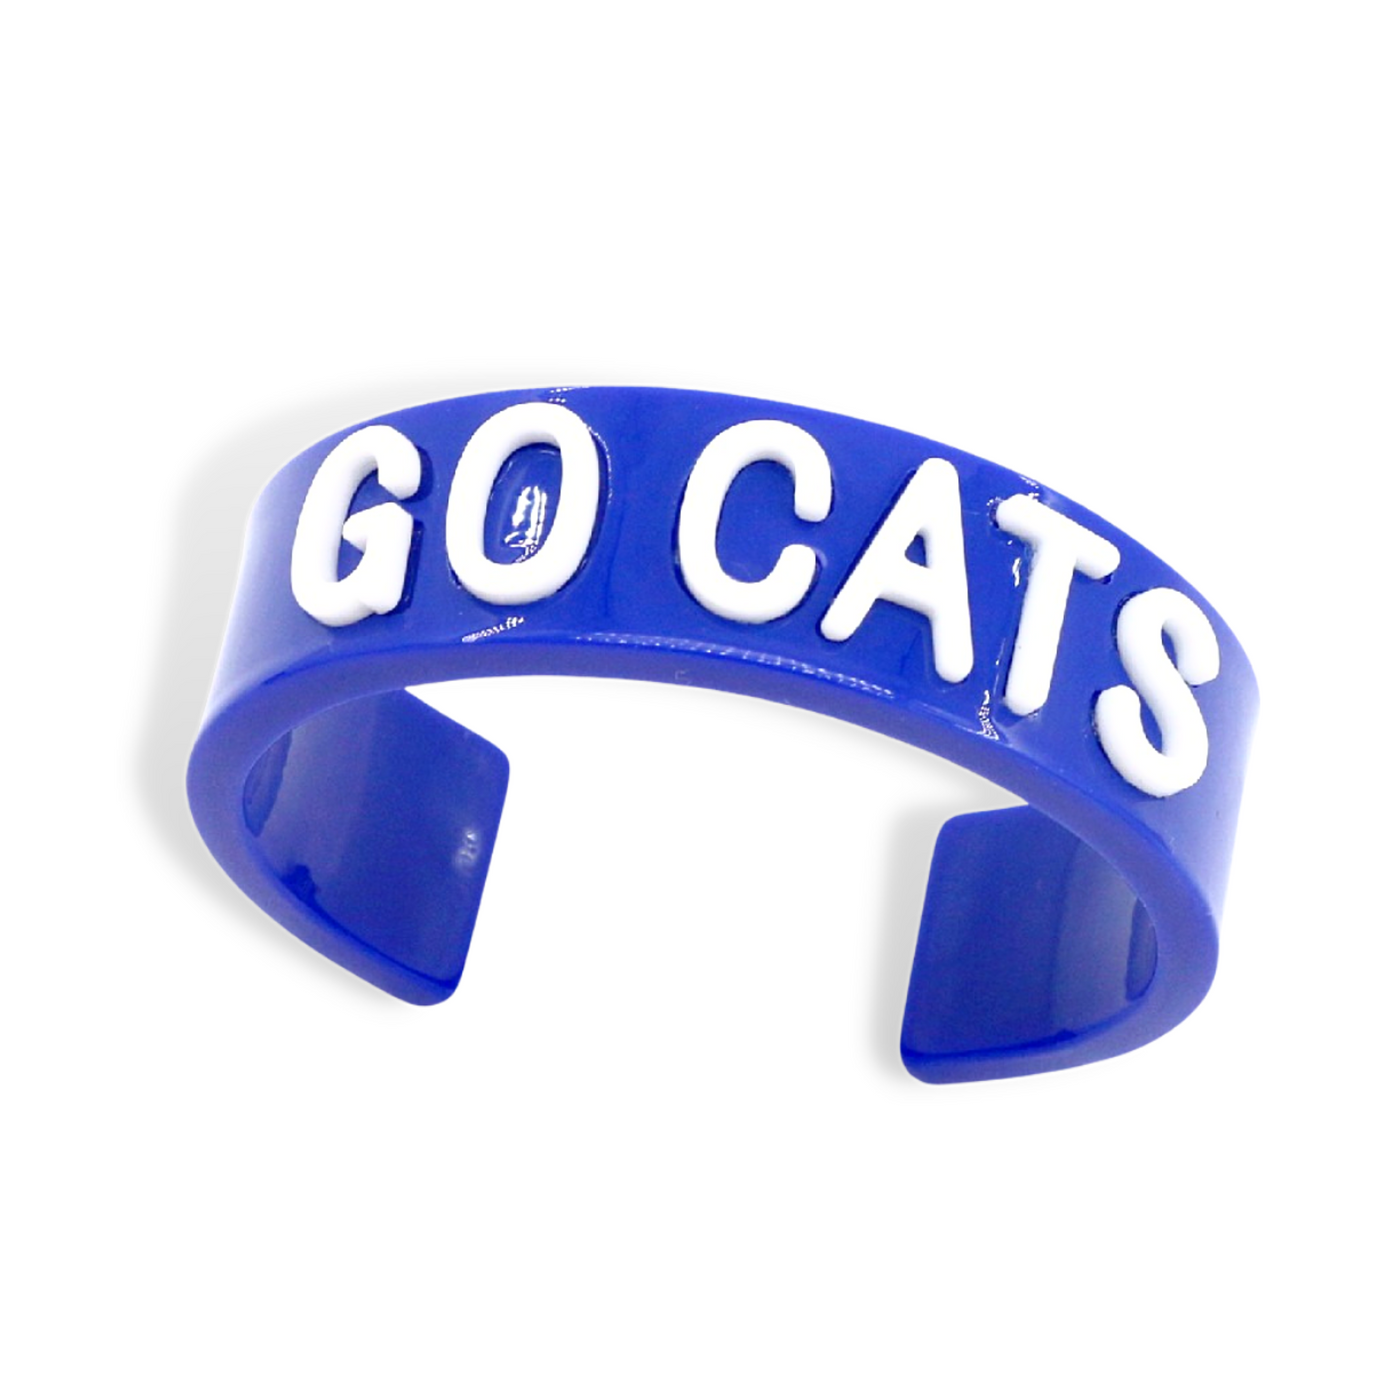 University of Kentucky Blue GO CATS Cuff